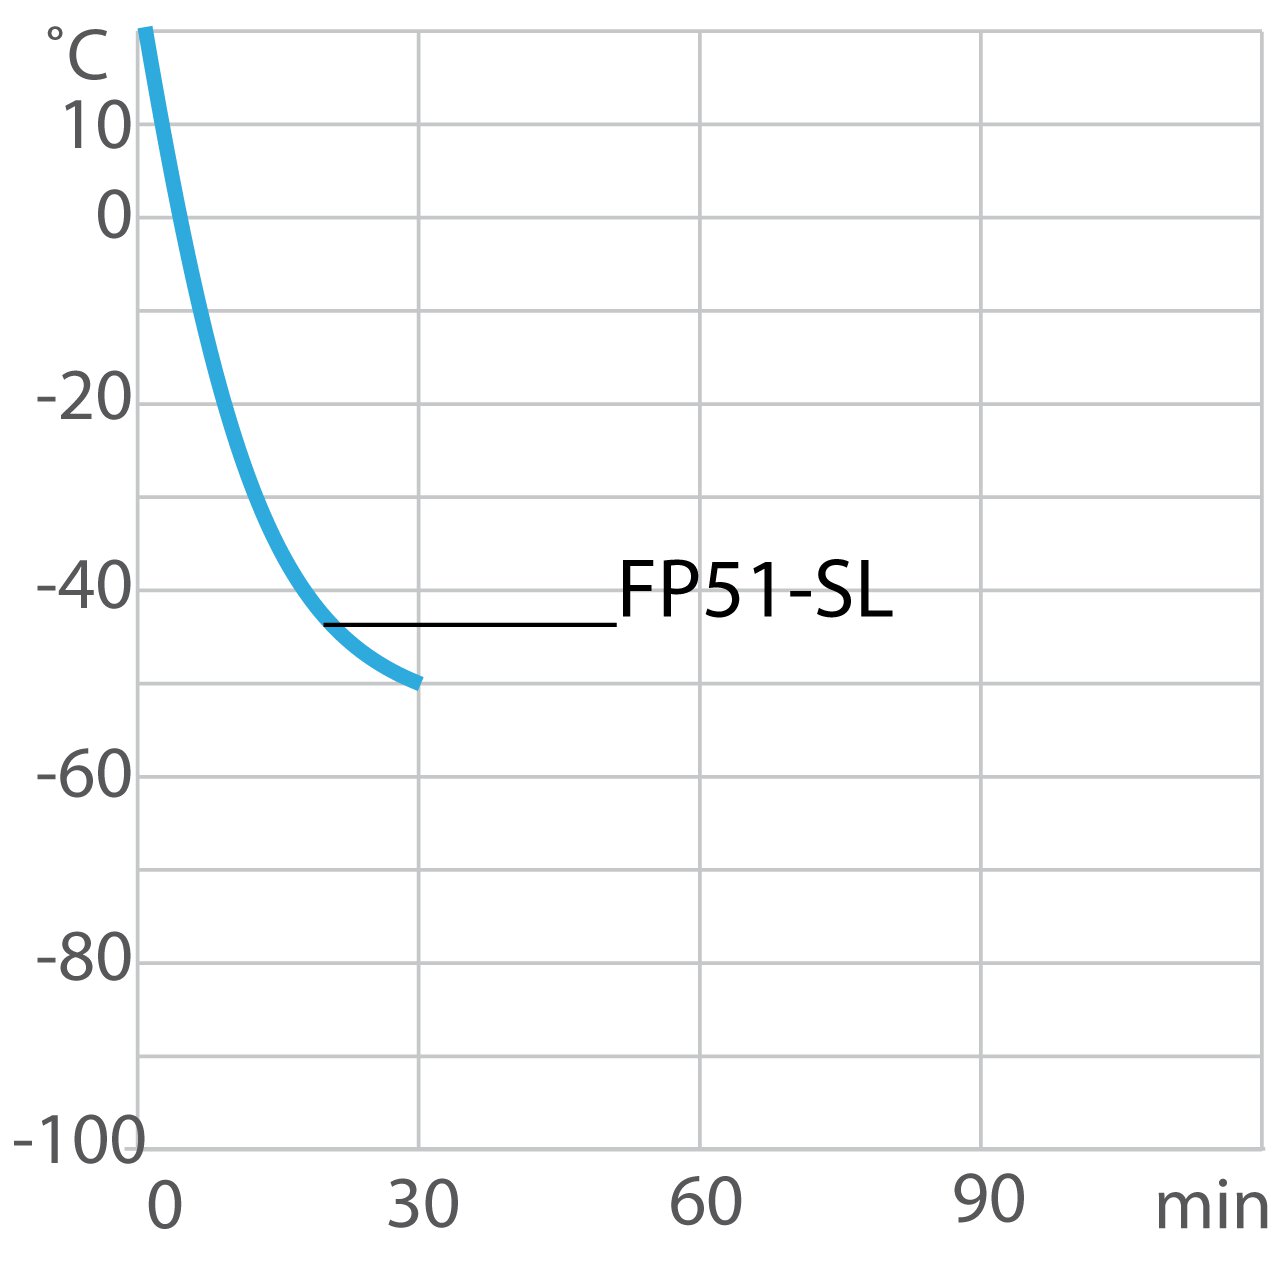 Afkoelcurve voor laboratoriumthermostaat F51-SL